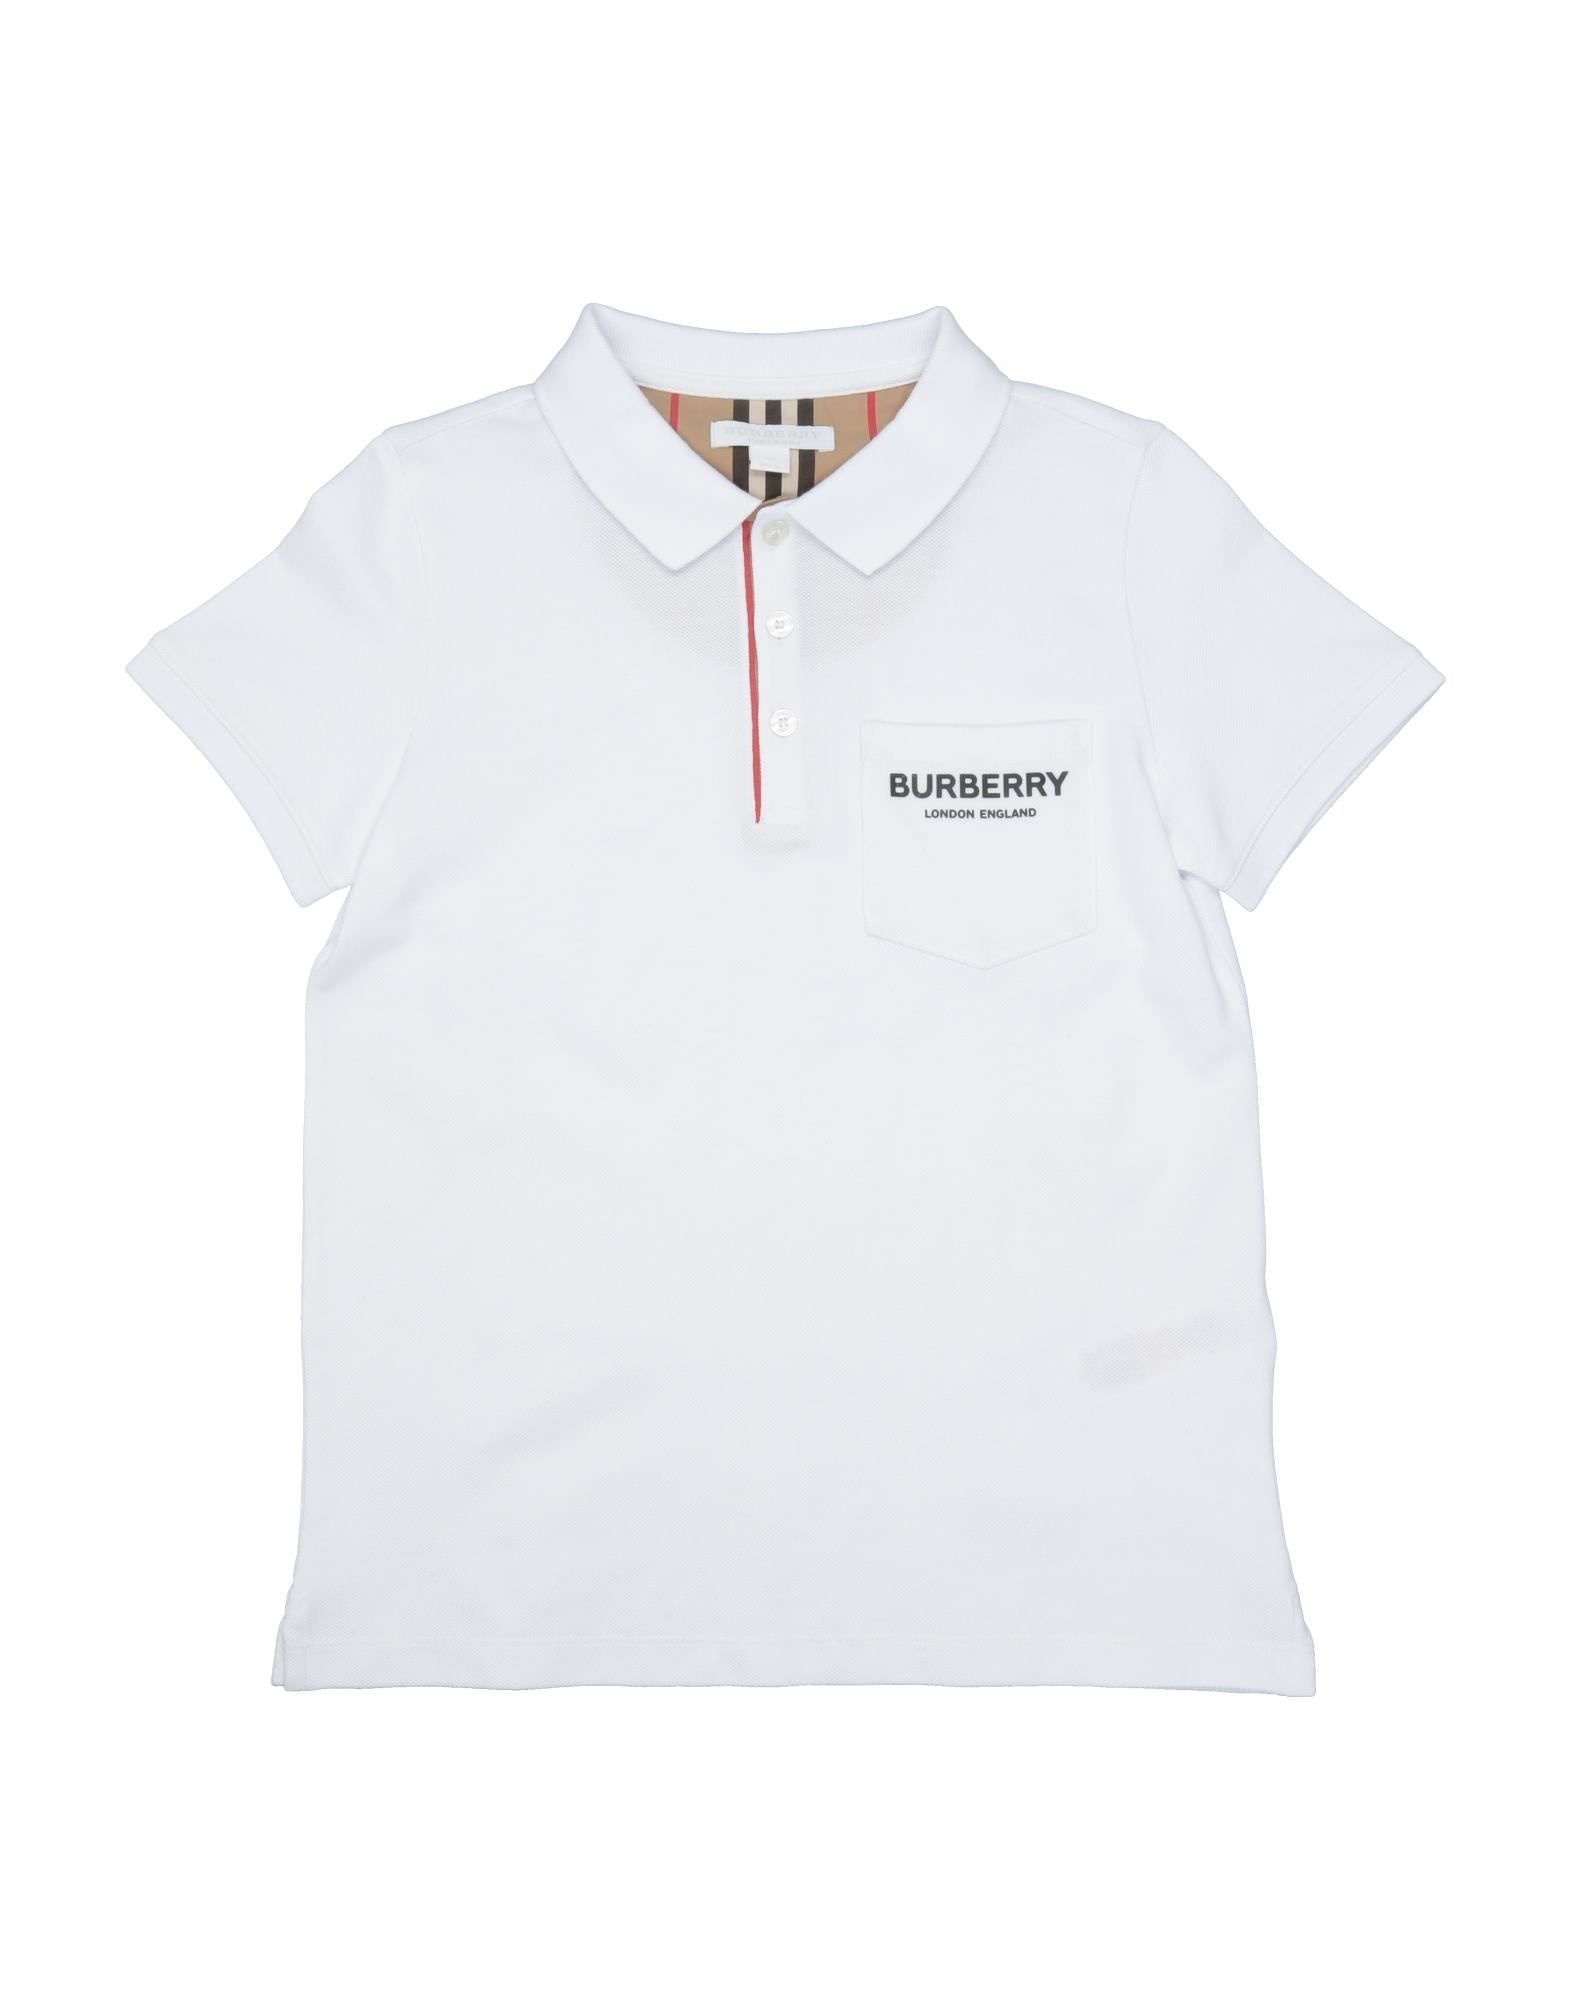 burberry white polo shirt